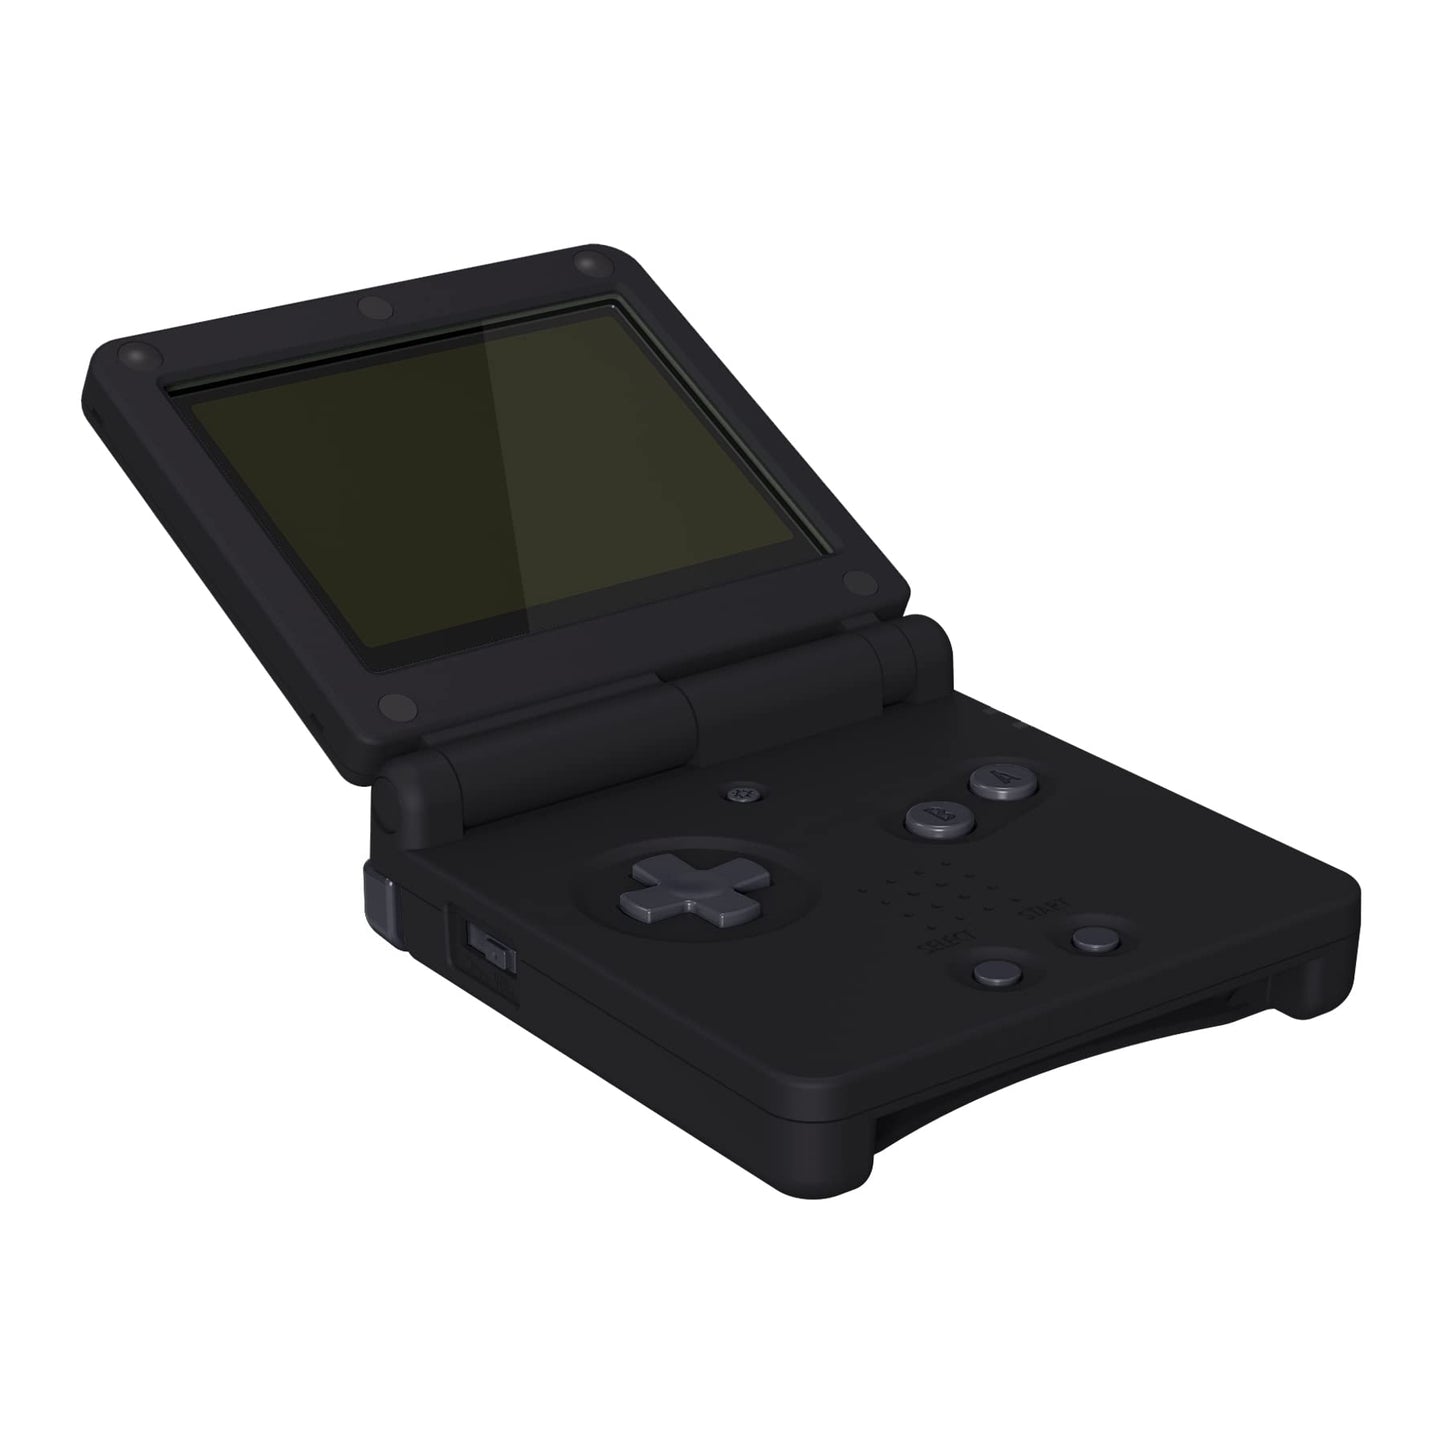 Custom Modded Gameboy Advance SP AGS-101 V2 IPS Screen Matte Black (Gameboy Advance)